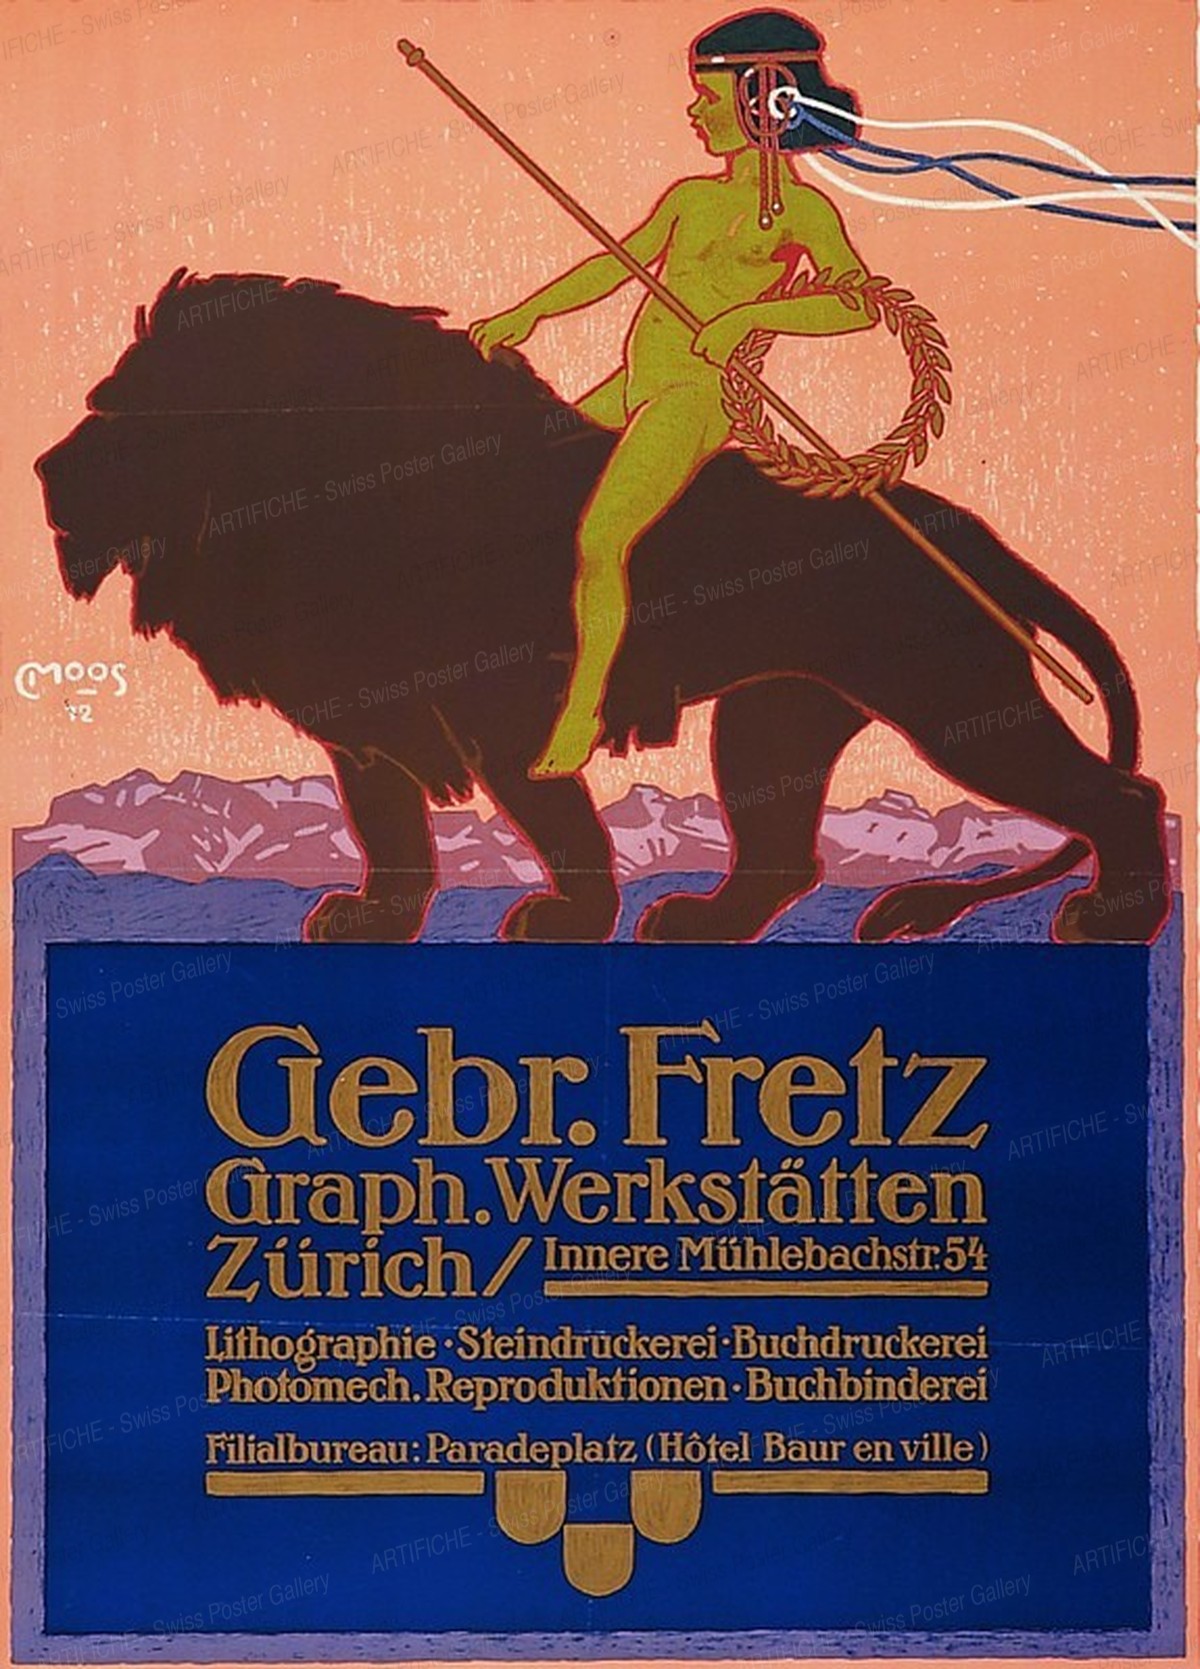 Gebr. Fretz Graph. Werkstätten Zürich, Carl Franz Moos